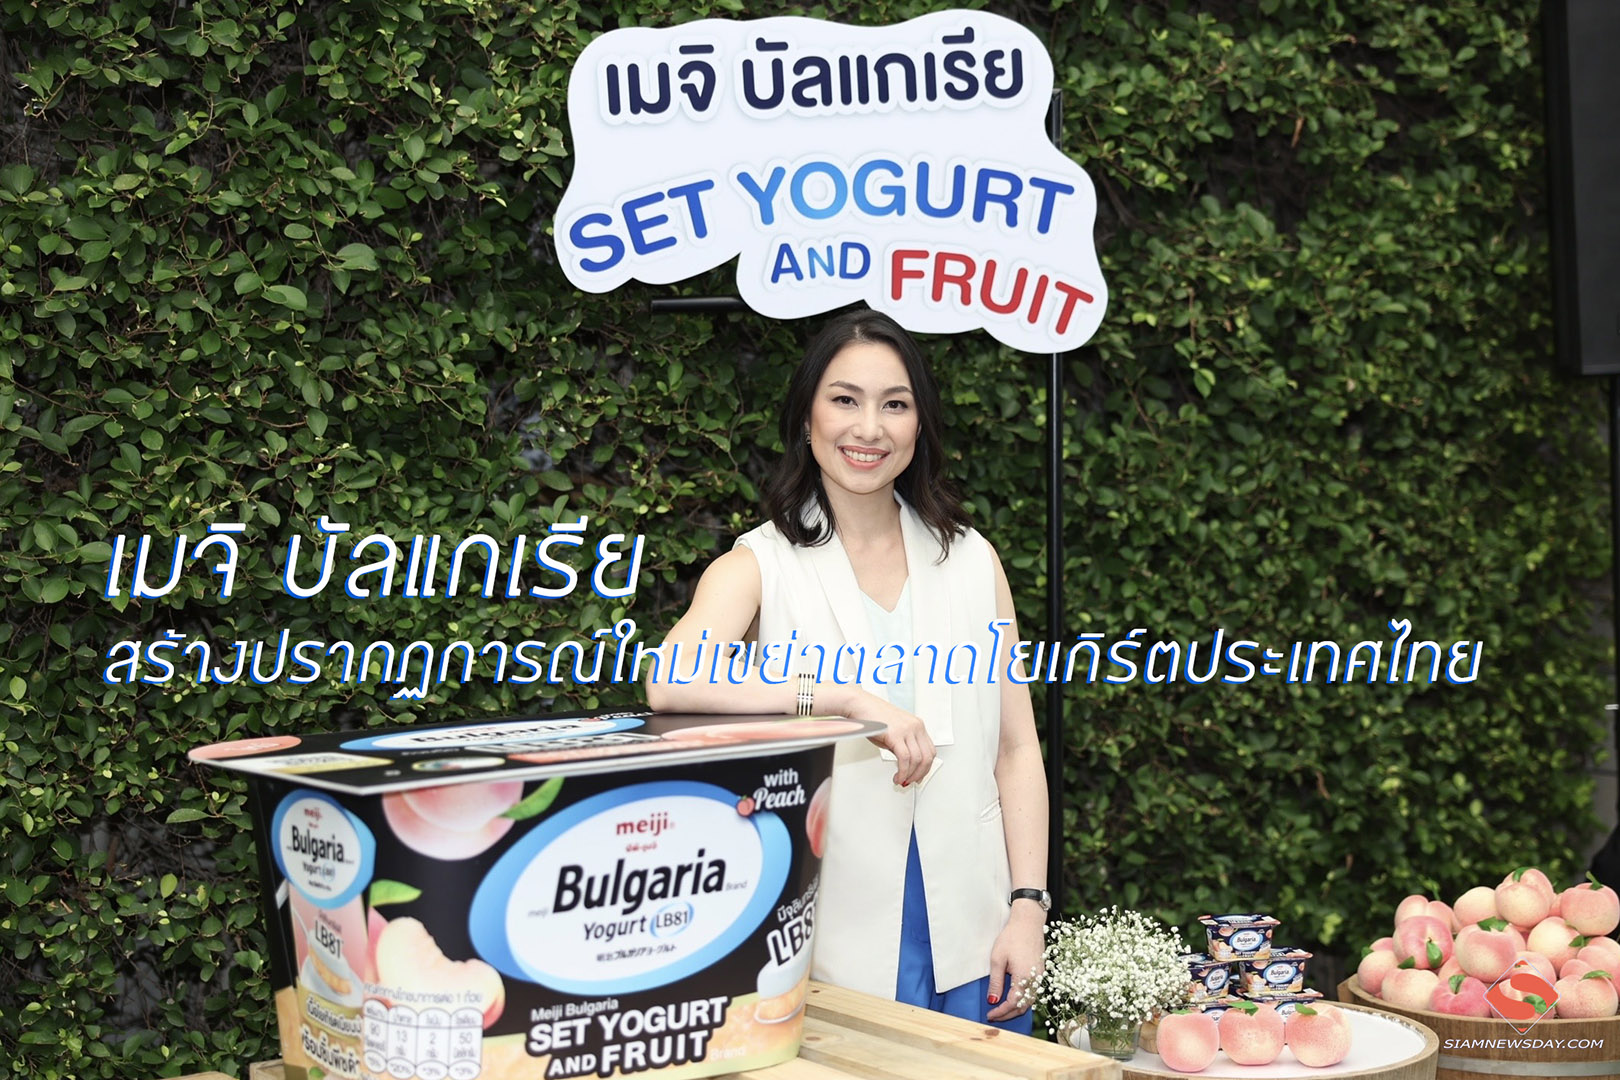 เมจิ บัลแกเรีย สร้างปรากฏการณ์ใหม่เขย่าตลาดโยเกิร์ตประเทศไทย